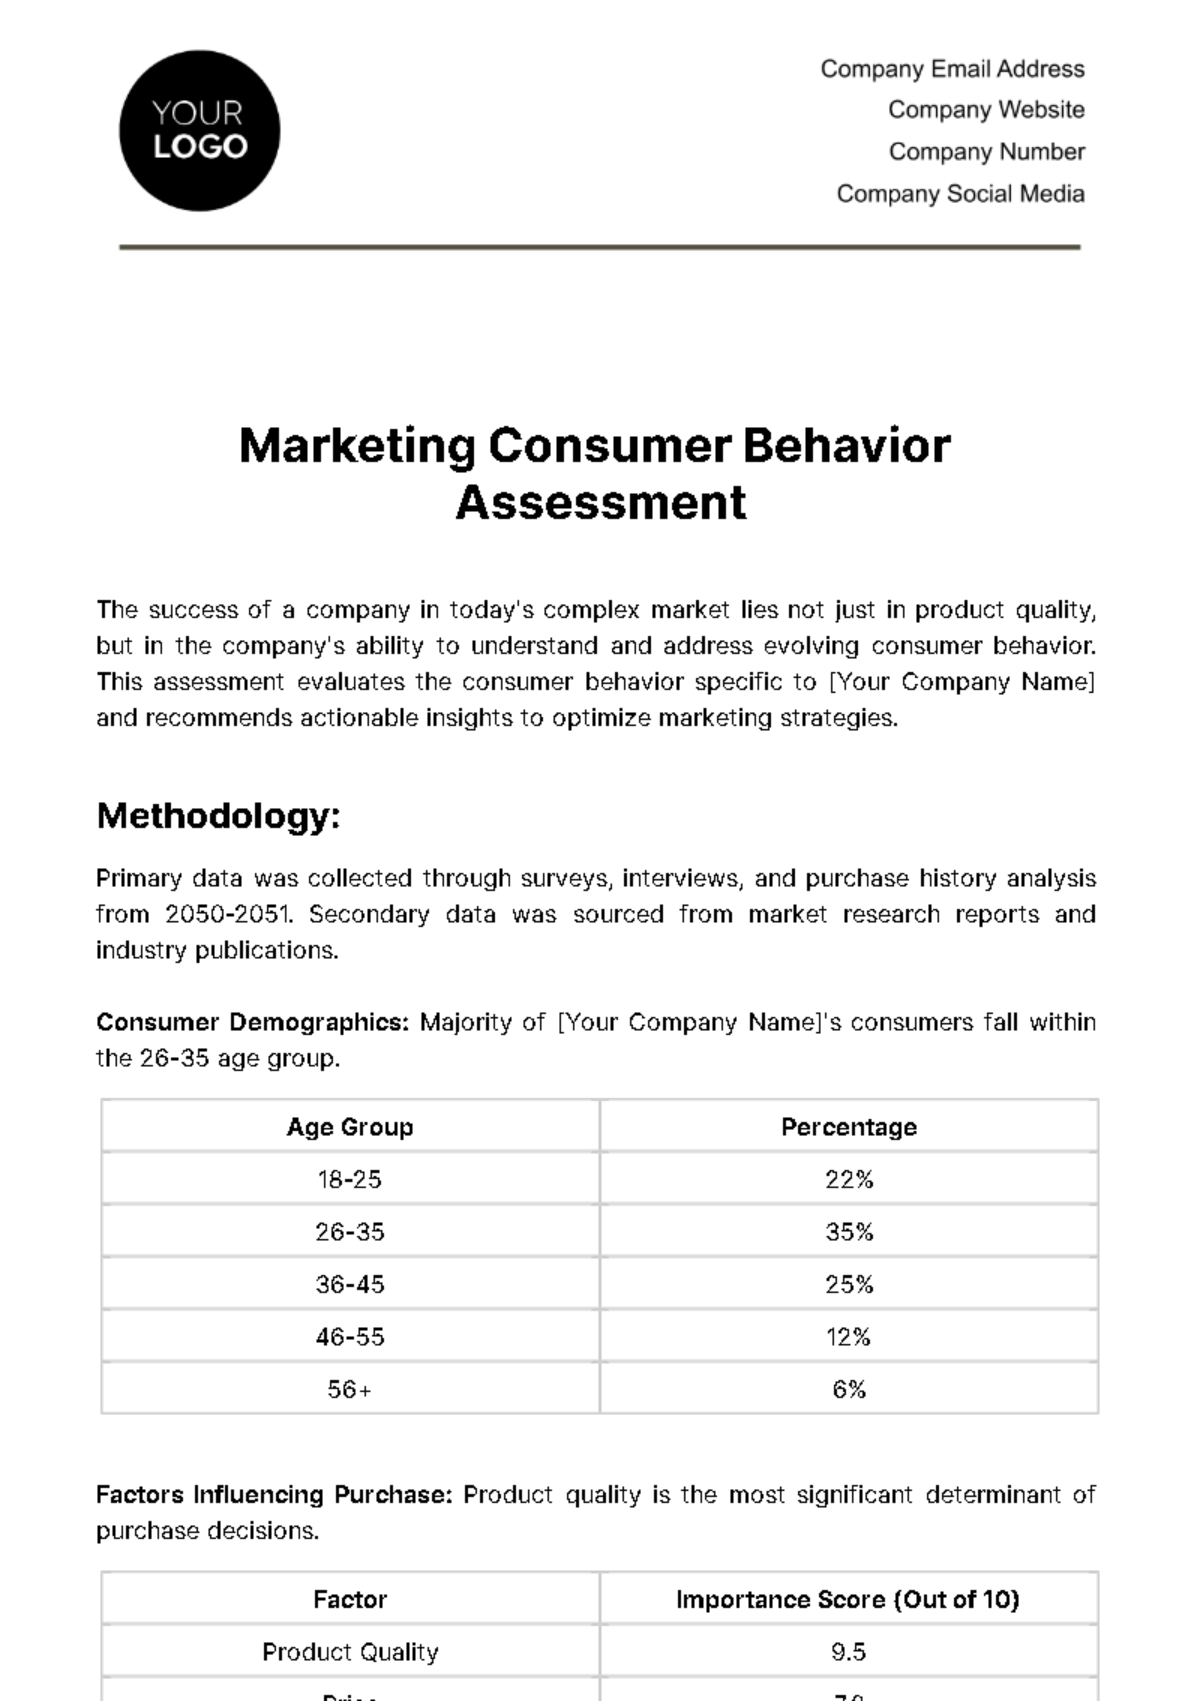 Marketing Consumer Behavior Assessment Template